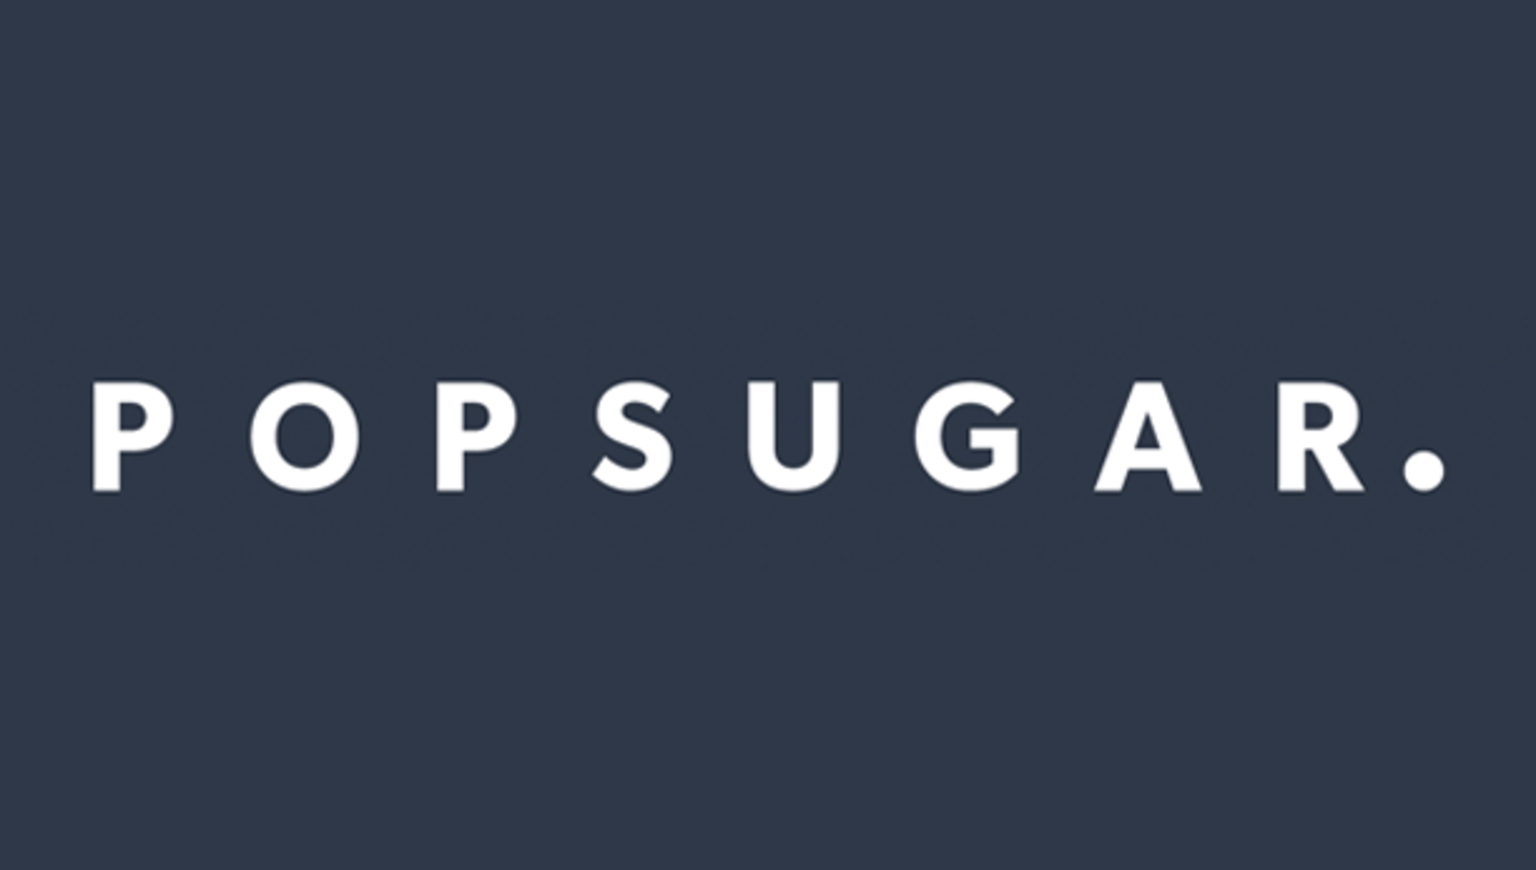 Read the PopSugar customer story